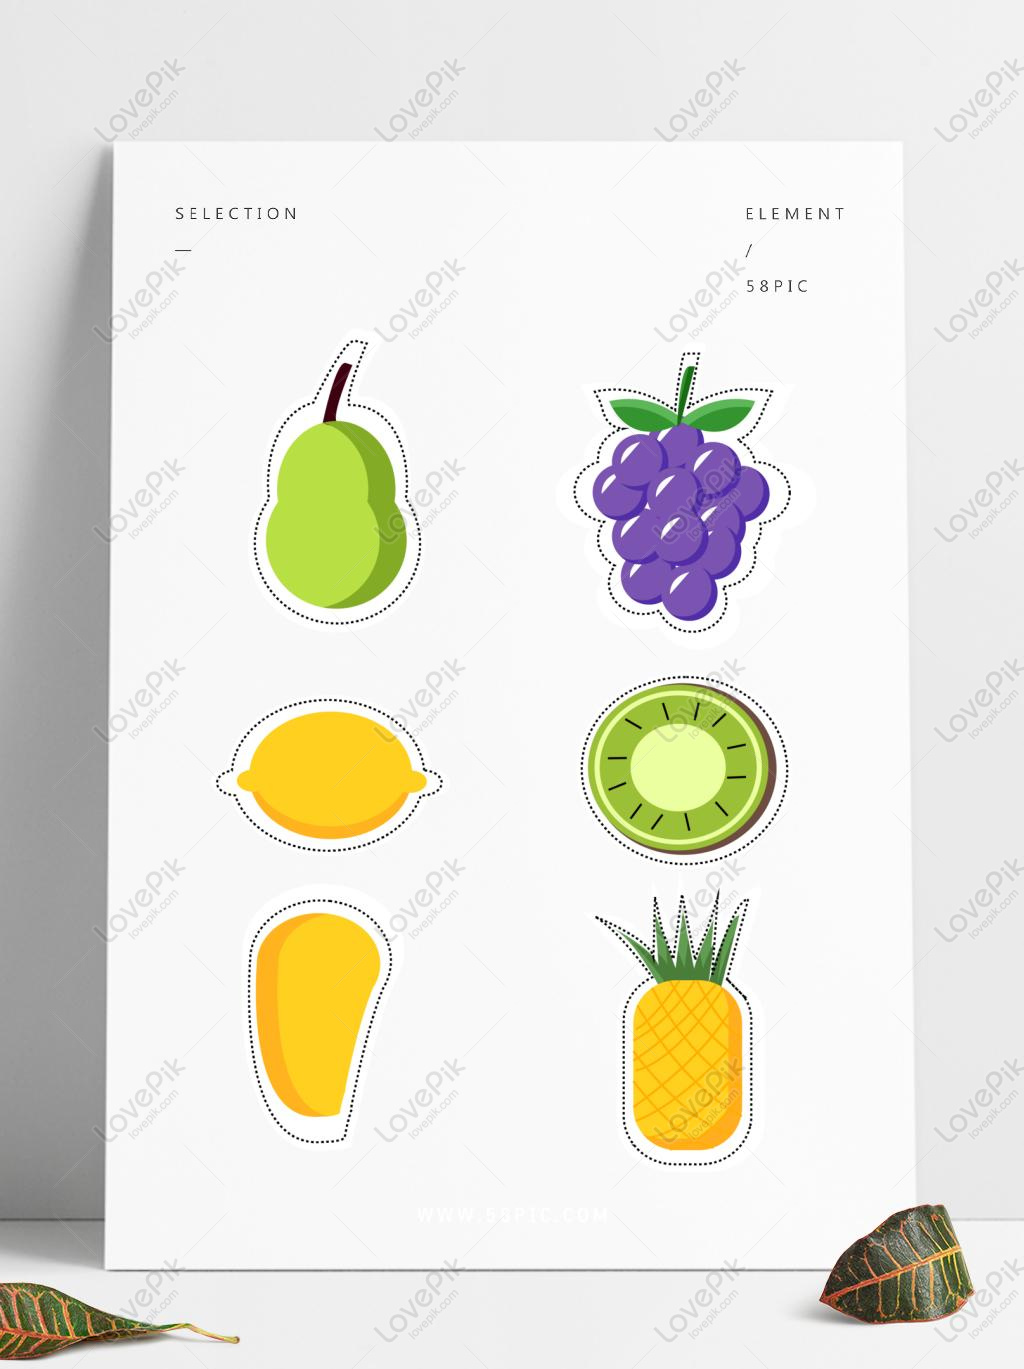 Bộ sưu tập hình vẽ sticker trái cây độc đáo, tạo ra từ các đường nét sắc sảo của vector, sẽ mang lại cảm giác mát mẻ cho mùa hè này. Xem hình ảnh để chiêm ngưỡng những chi tiết tinh xảo của từng loại trái cây một cách rõ nét!